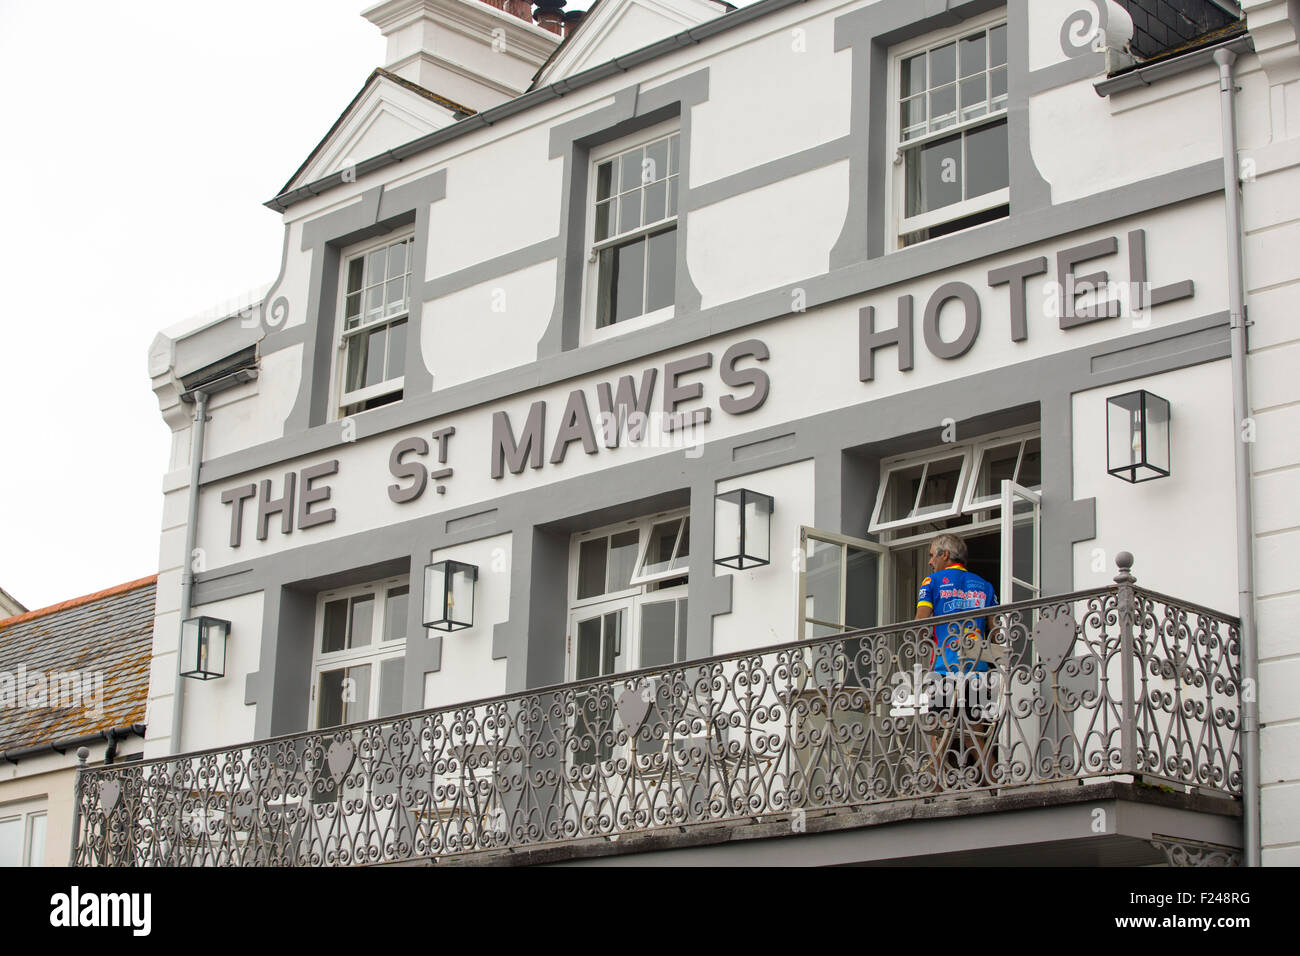 Le St Mawes Hôtels à St Mawes, Cornwall, UK. Banque D'Images